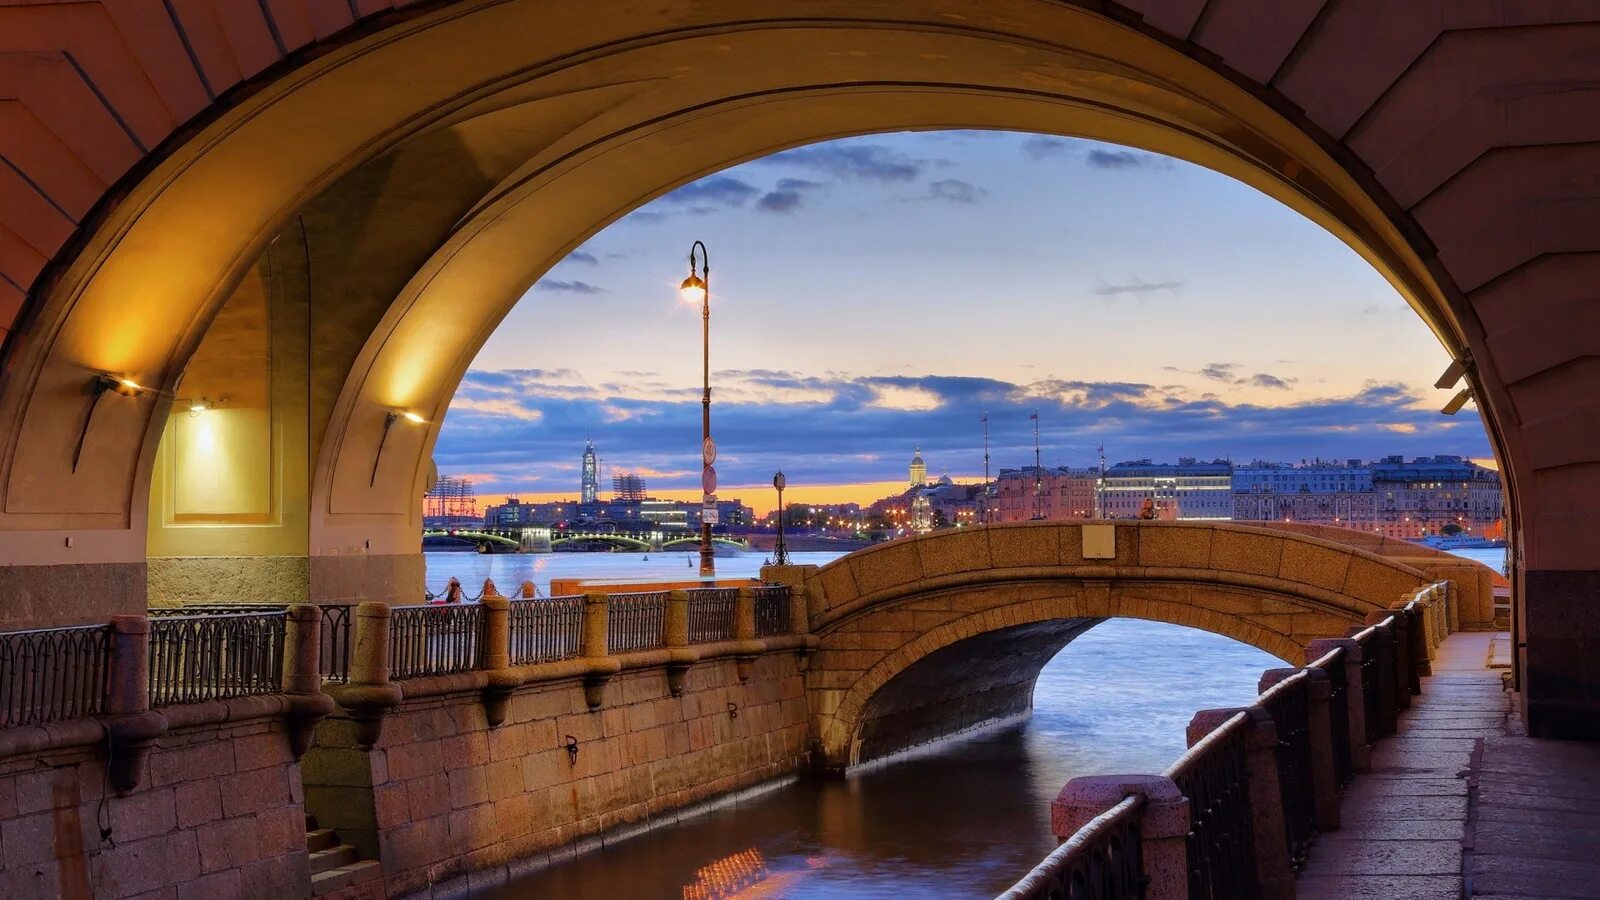 Самый красивый мост петербурга